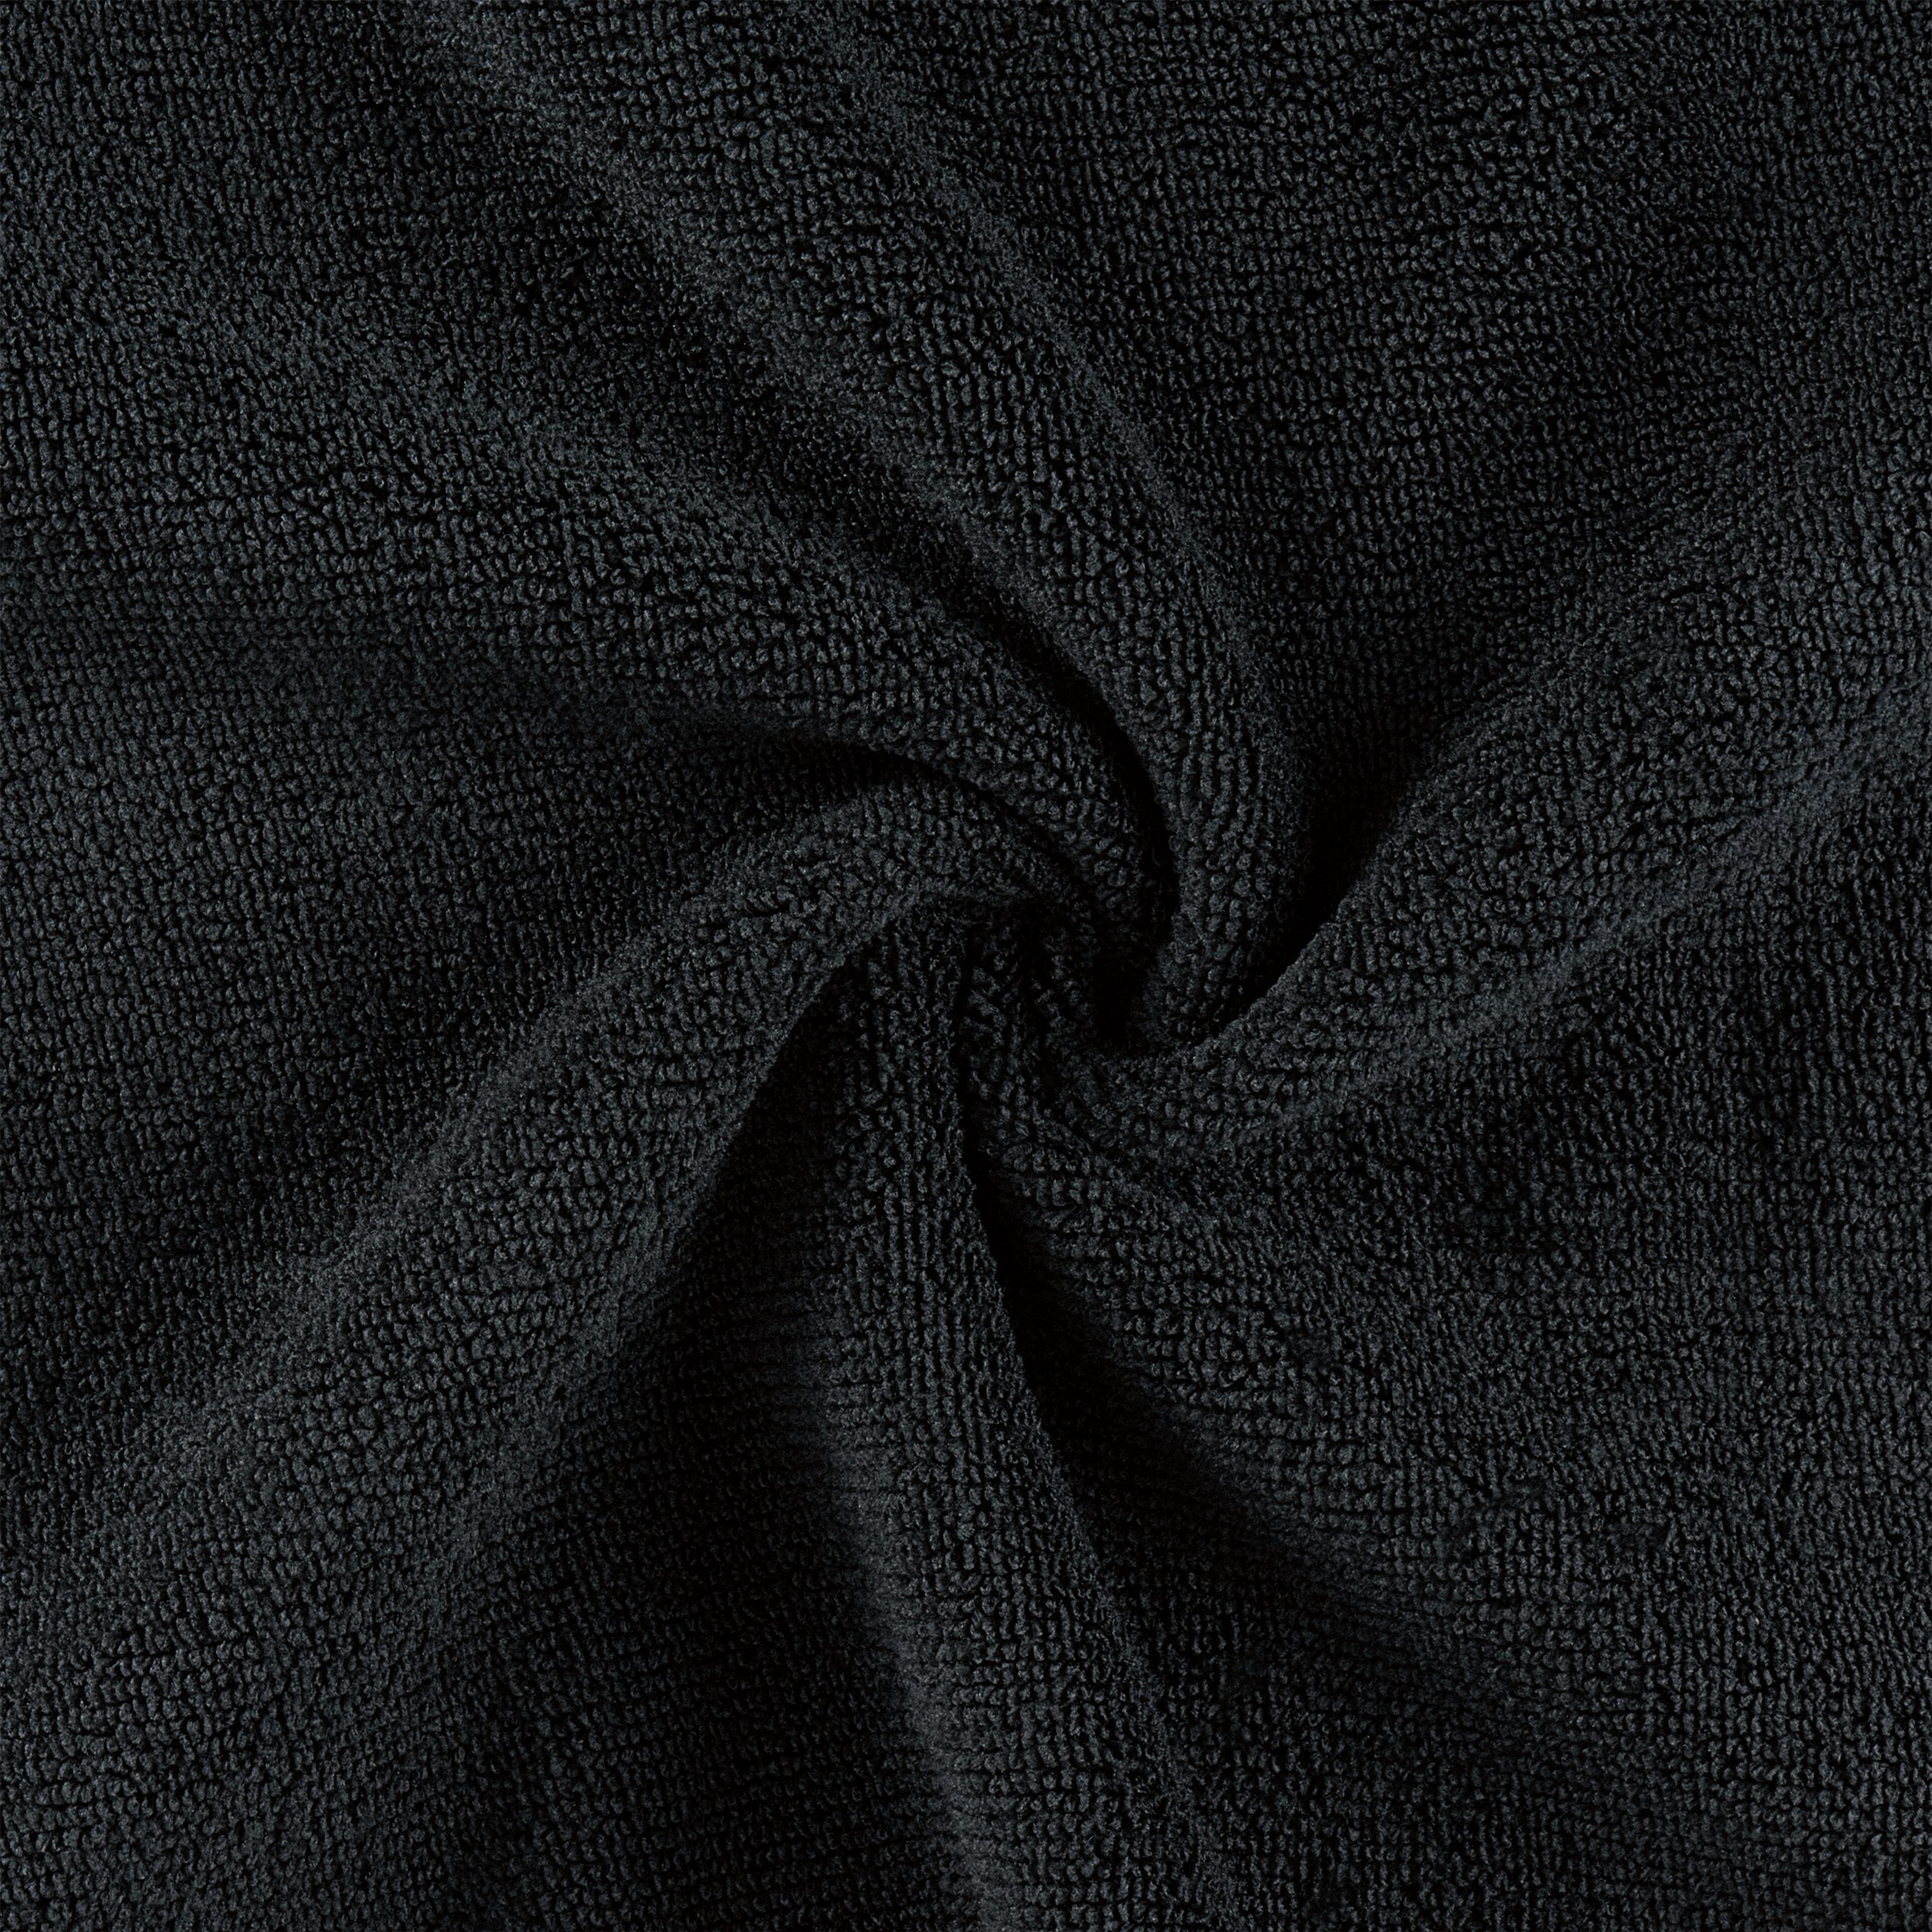 Bleach-Resistant Microfiber Salon Towels – Monarch Brands